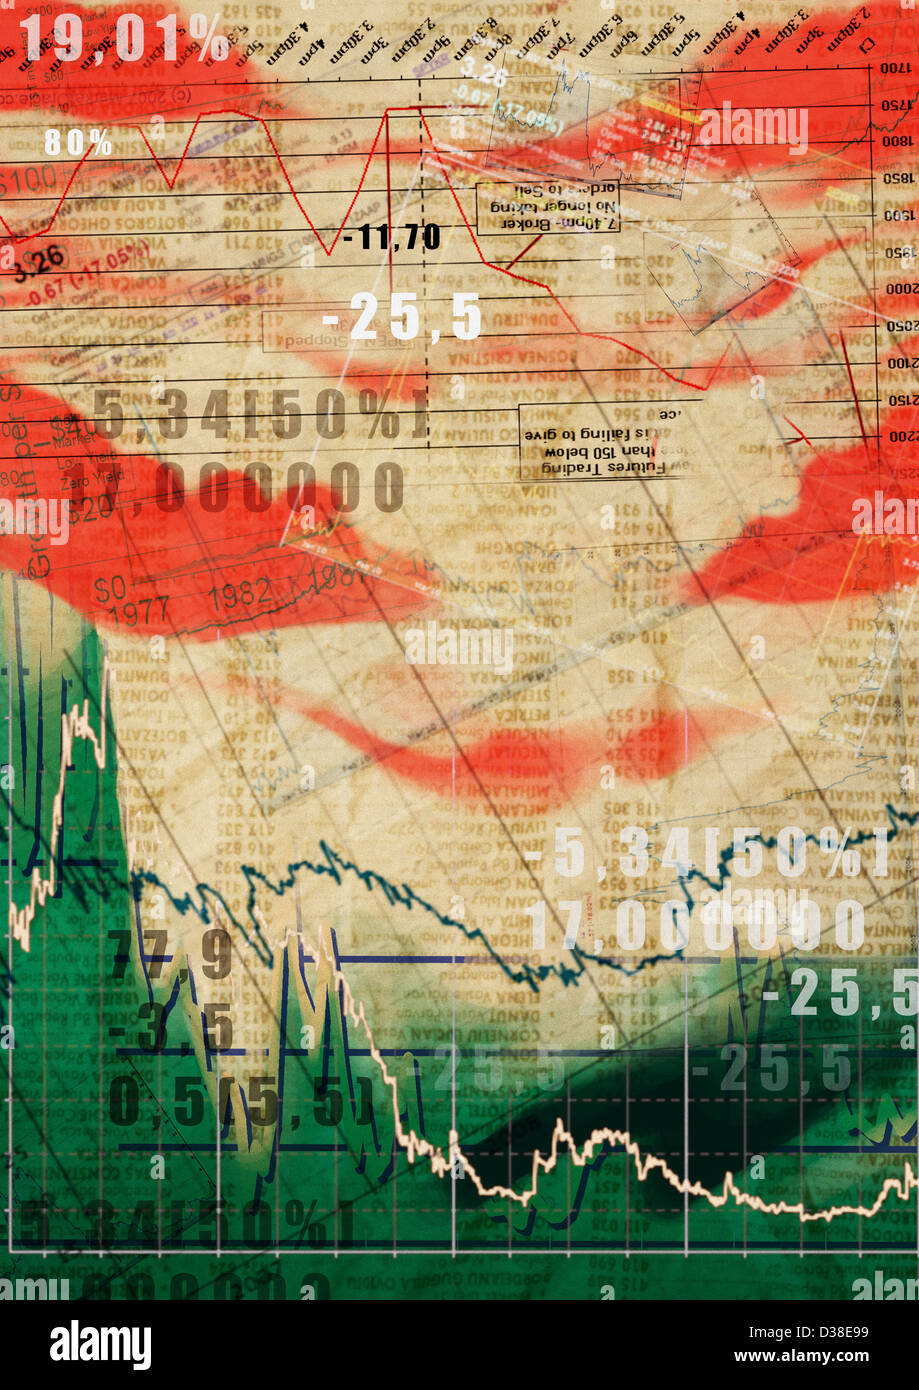 Illustrative image of sheet with stock market data Stock Photo